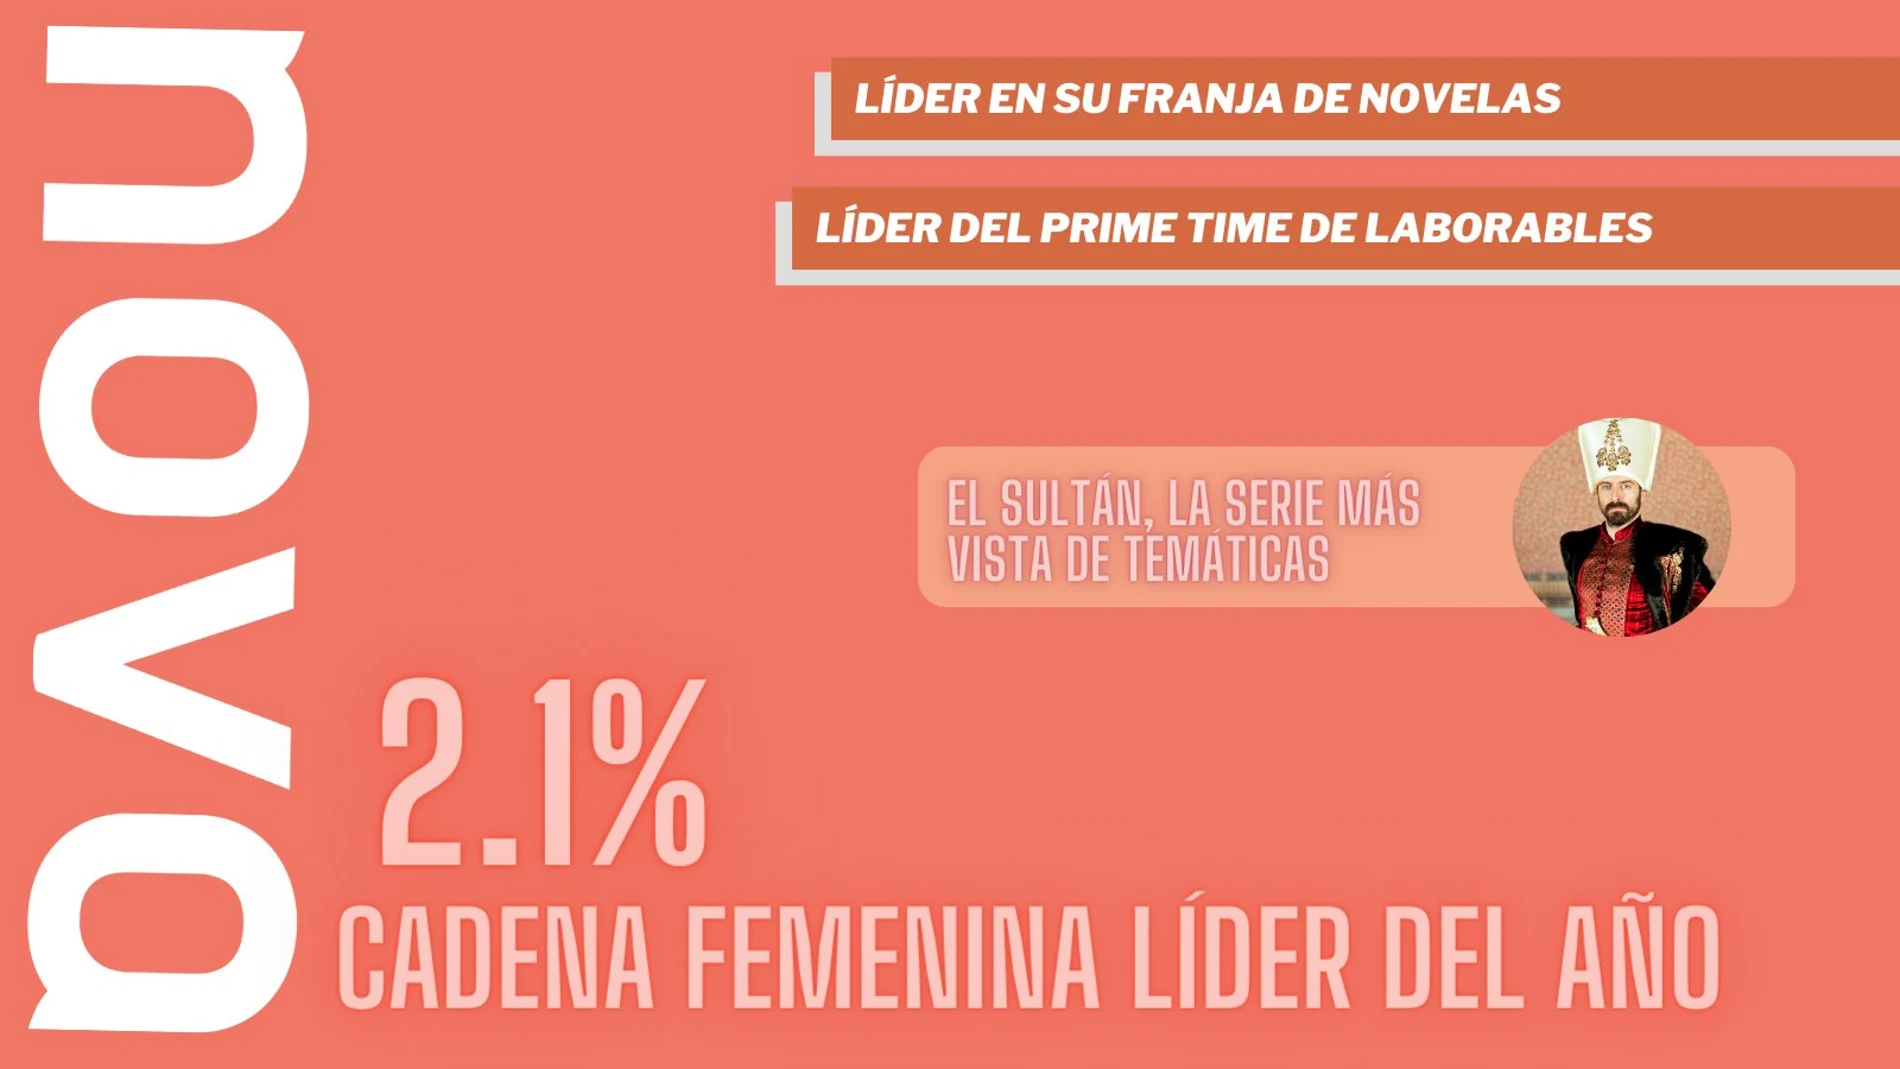 Nova (2,1%) es la cadena femenina líder del año y la temática líder del Prime Time de lunes a viernes